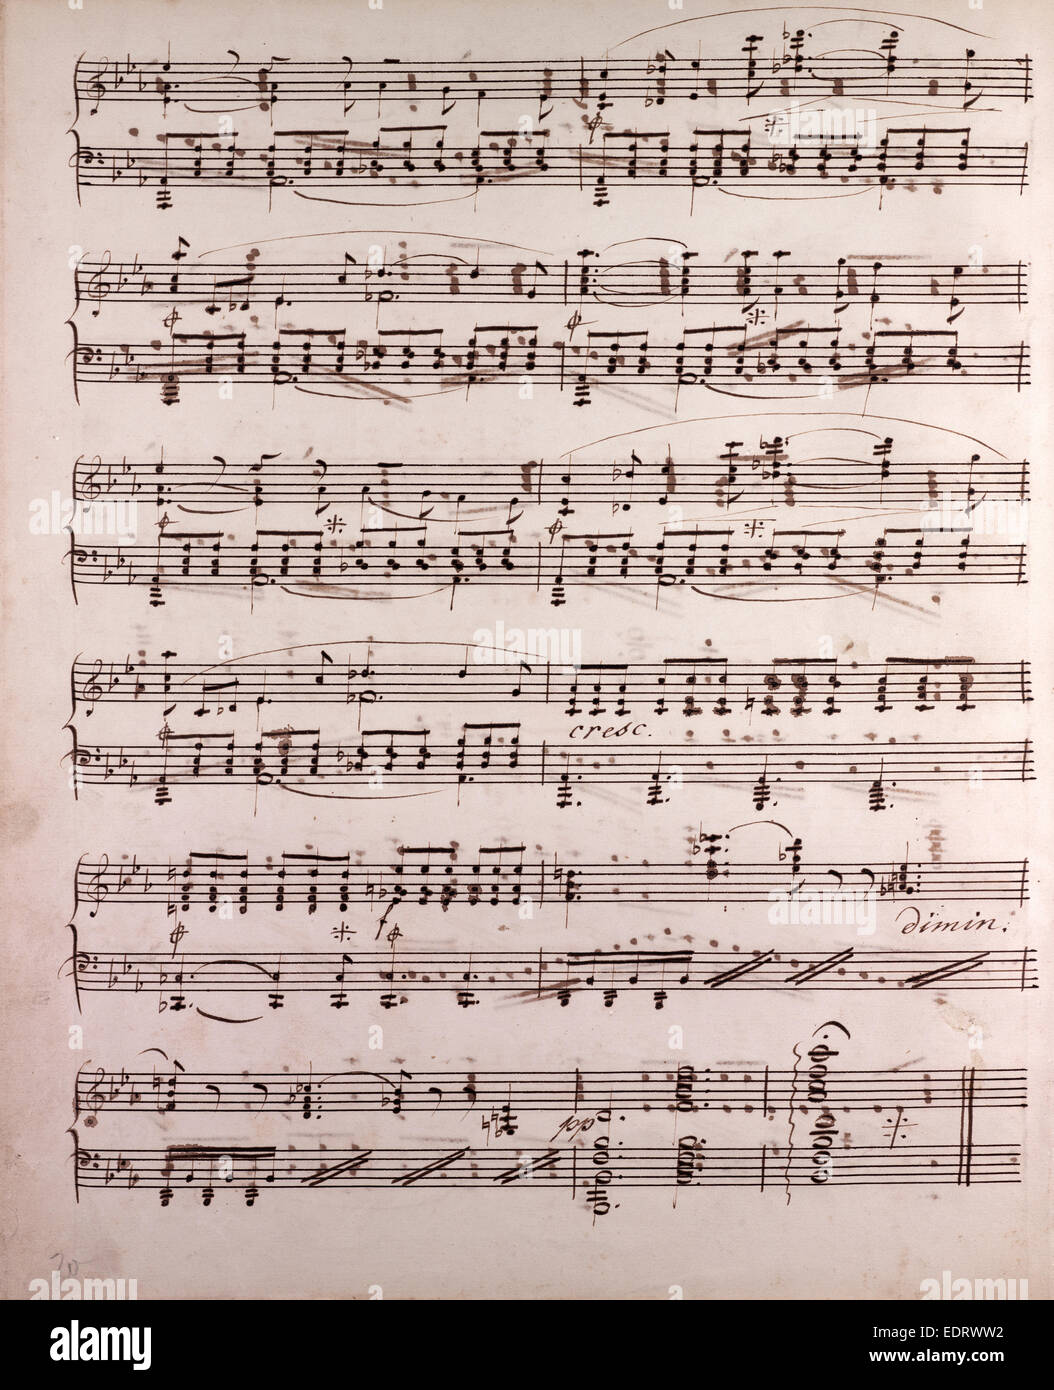 Partitions manuscrites, notes de musique, 19e siècle Banque D'Images